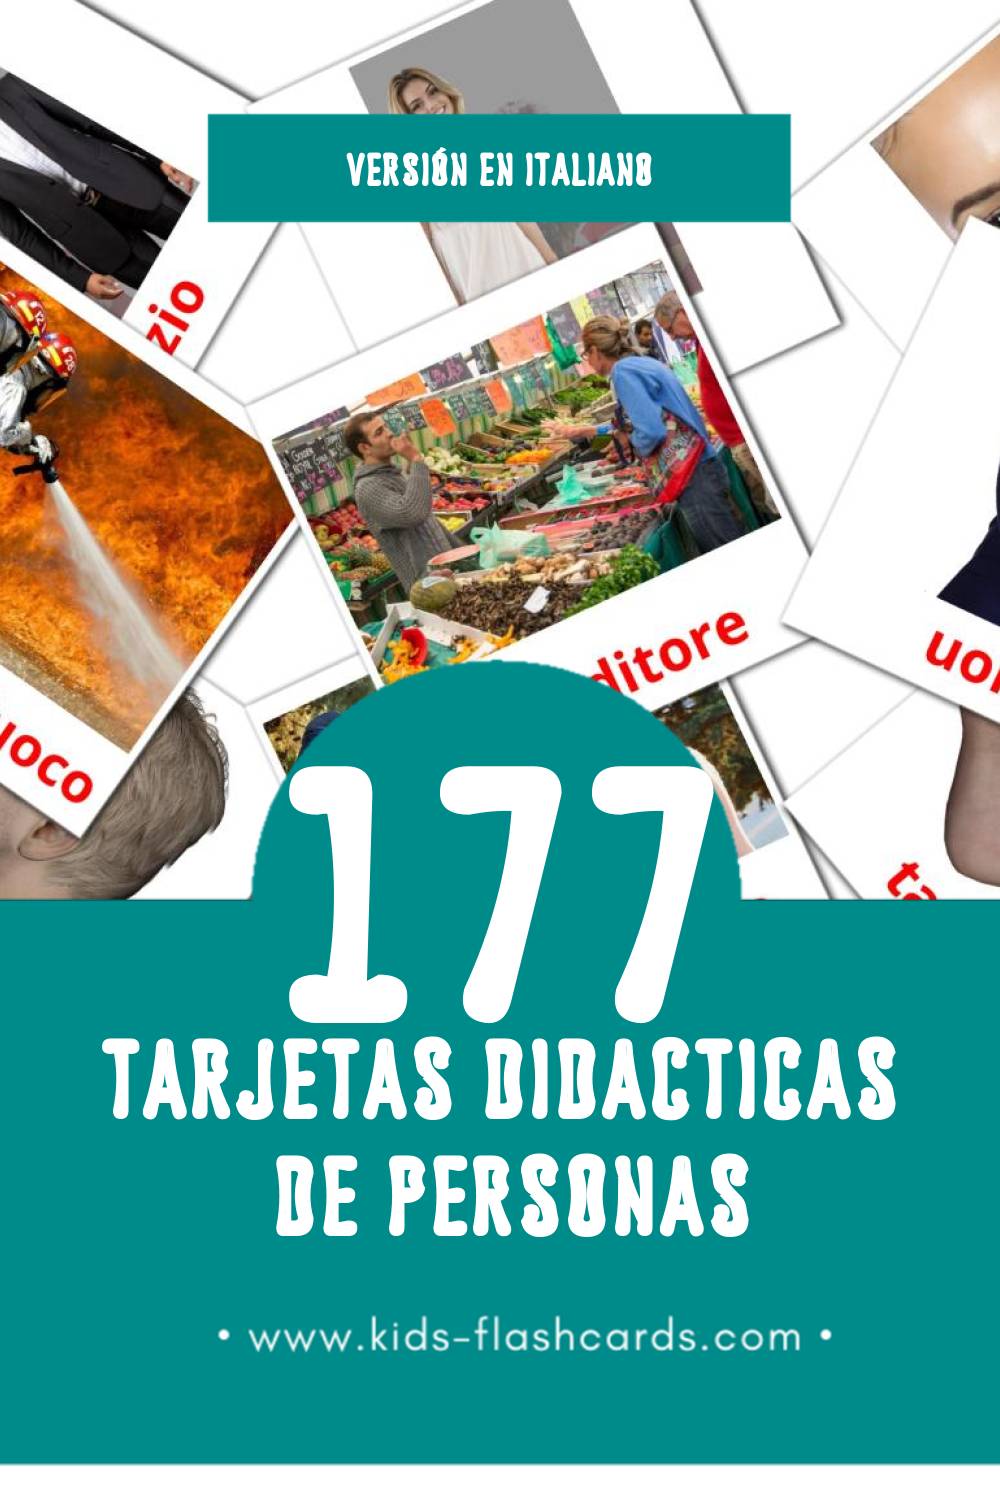 Tarjetas visuales de Le persone para niños pequeños (177 tarjetas en Italiano)